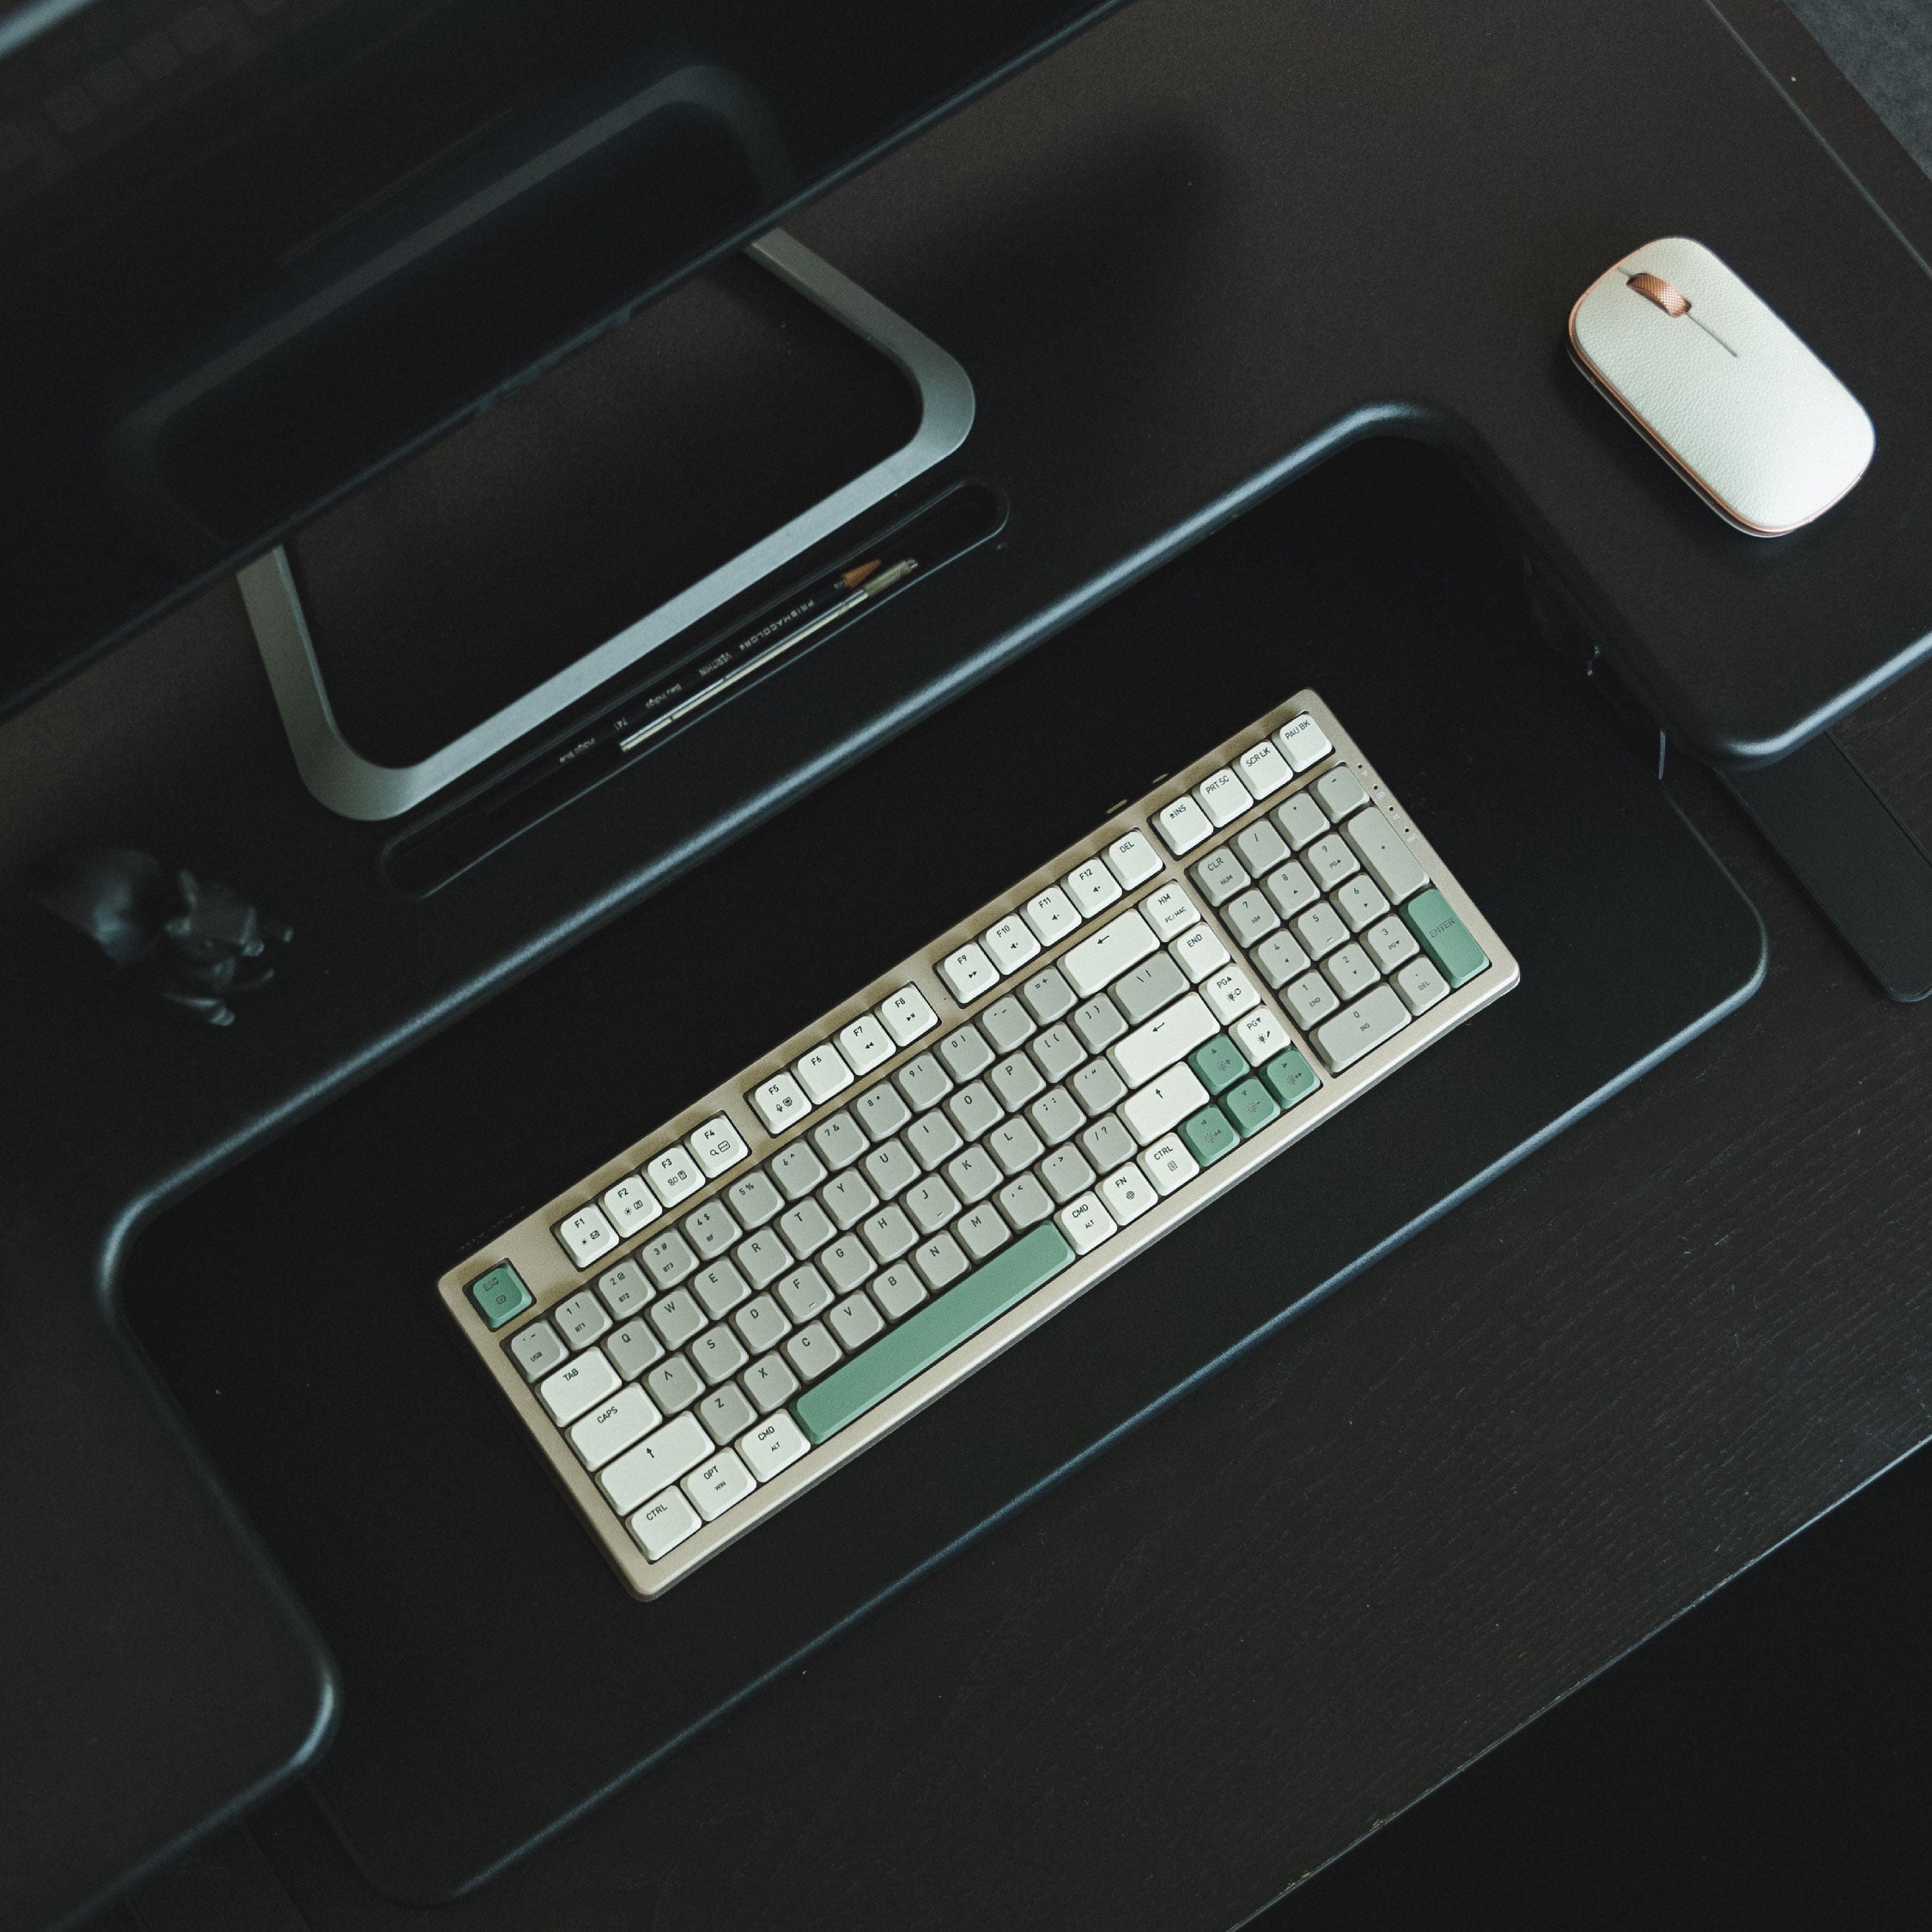 لوحة مفاتيح Cascade لاسلكية رفيعة بنسبة 98% وقابلة للتبديل السريع